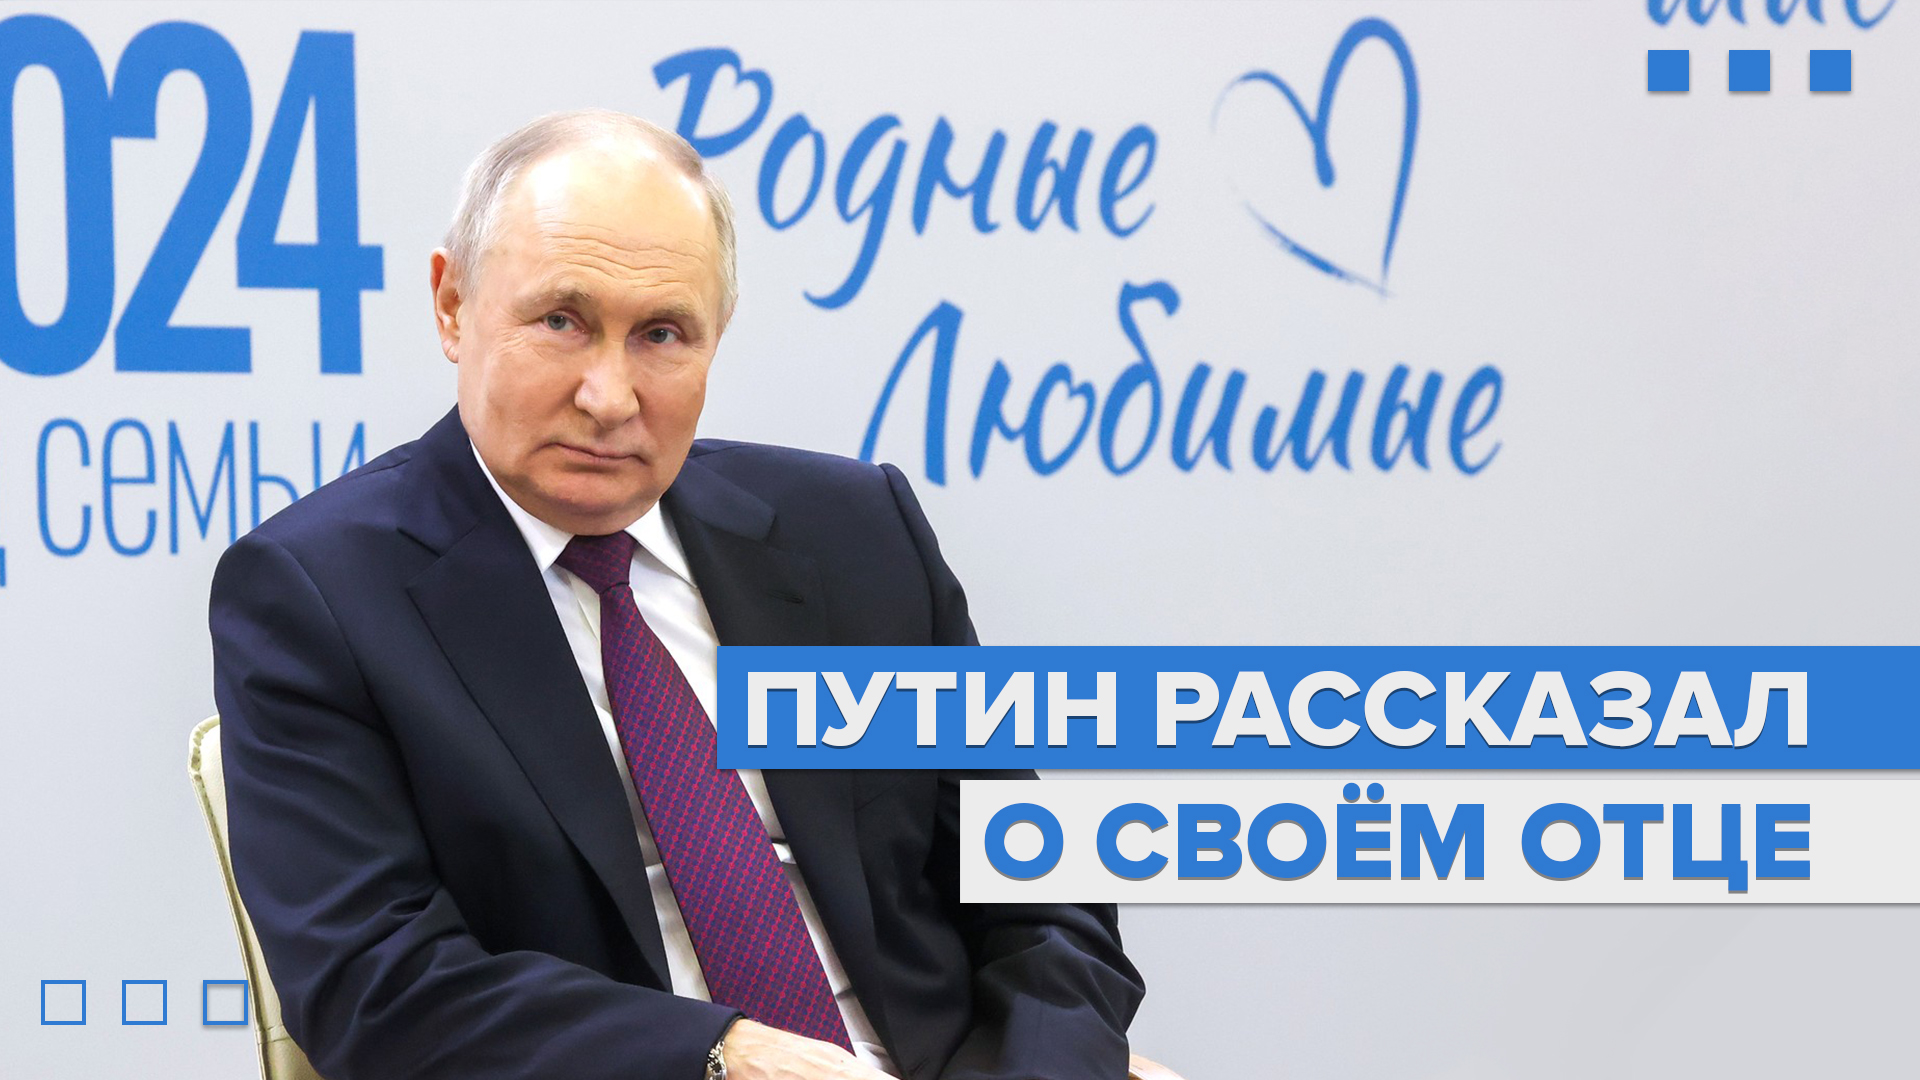 «Лучшее воспитание — это личный пример»: Путин рассказал о своём отце